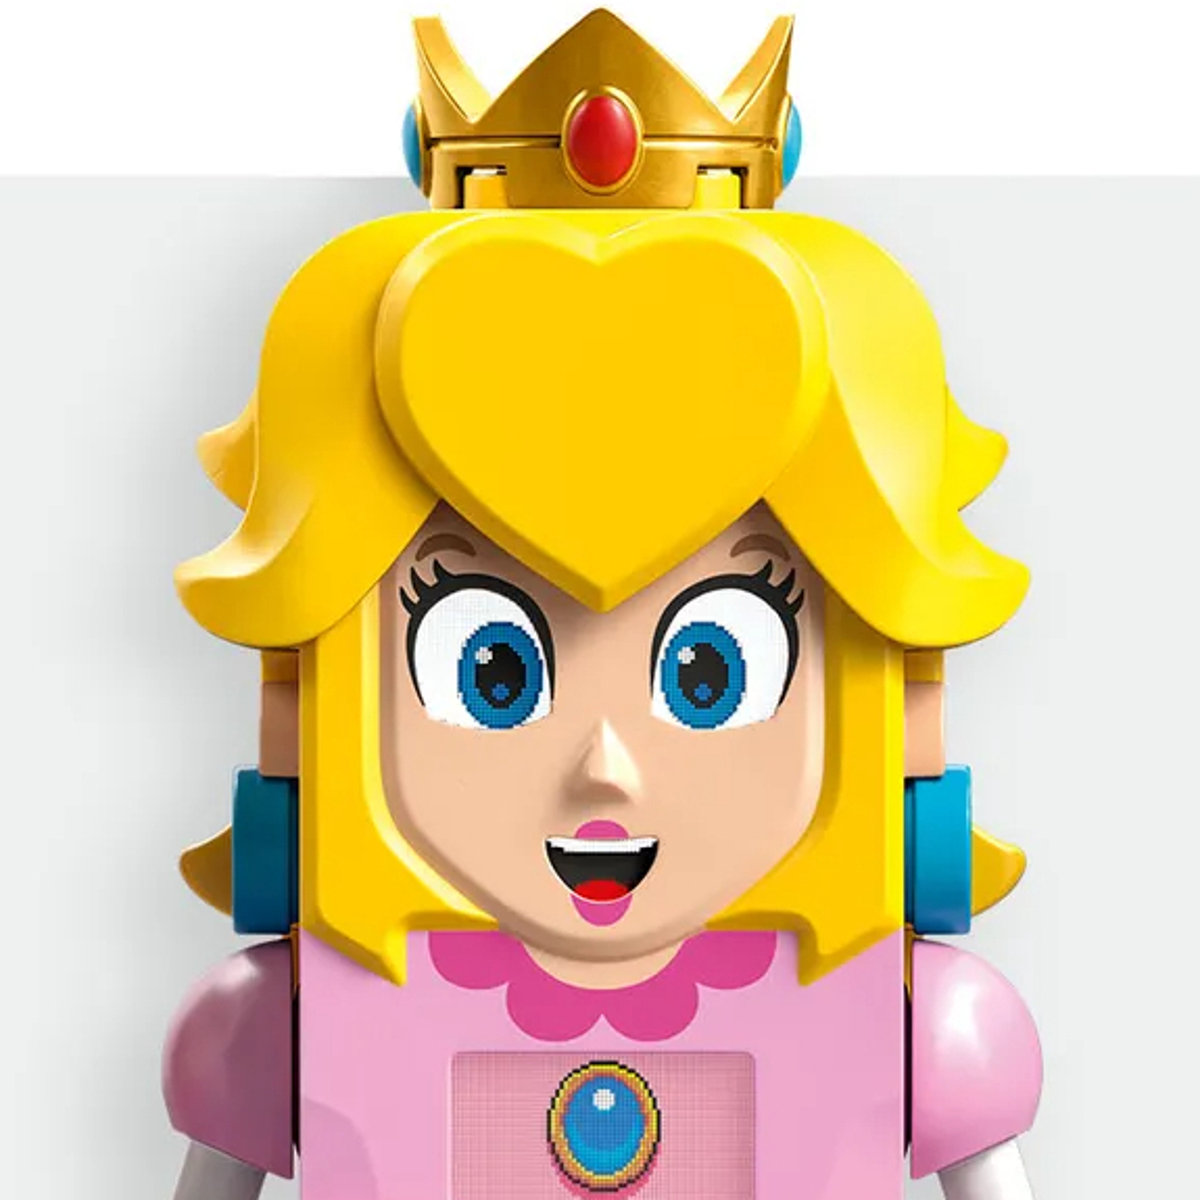 Nintendo e LEGO per il Mario Day annunciano il set della Principessa Peach